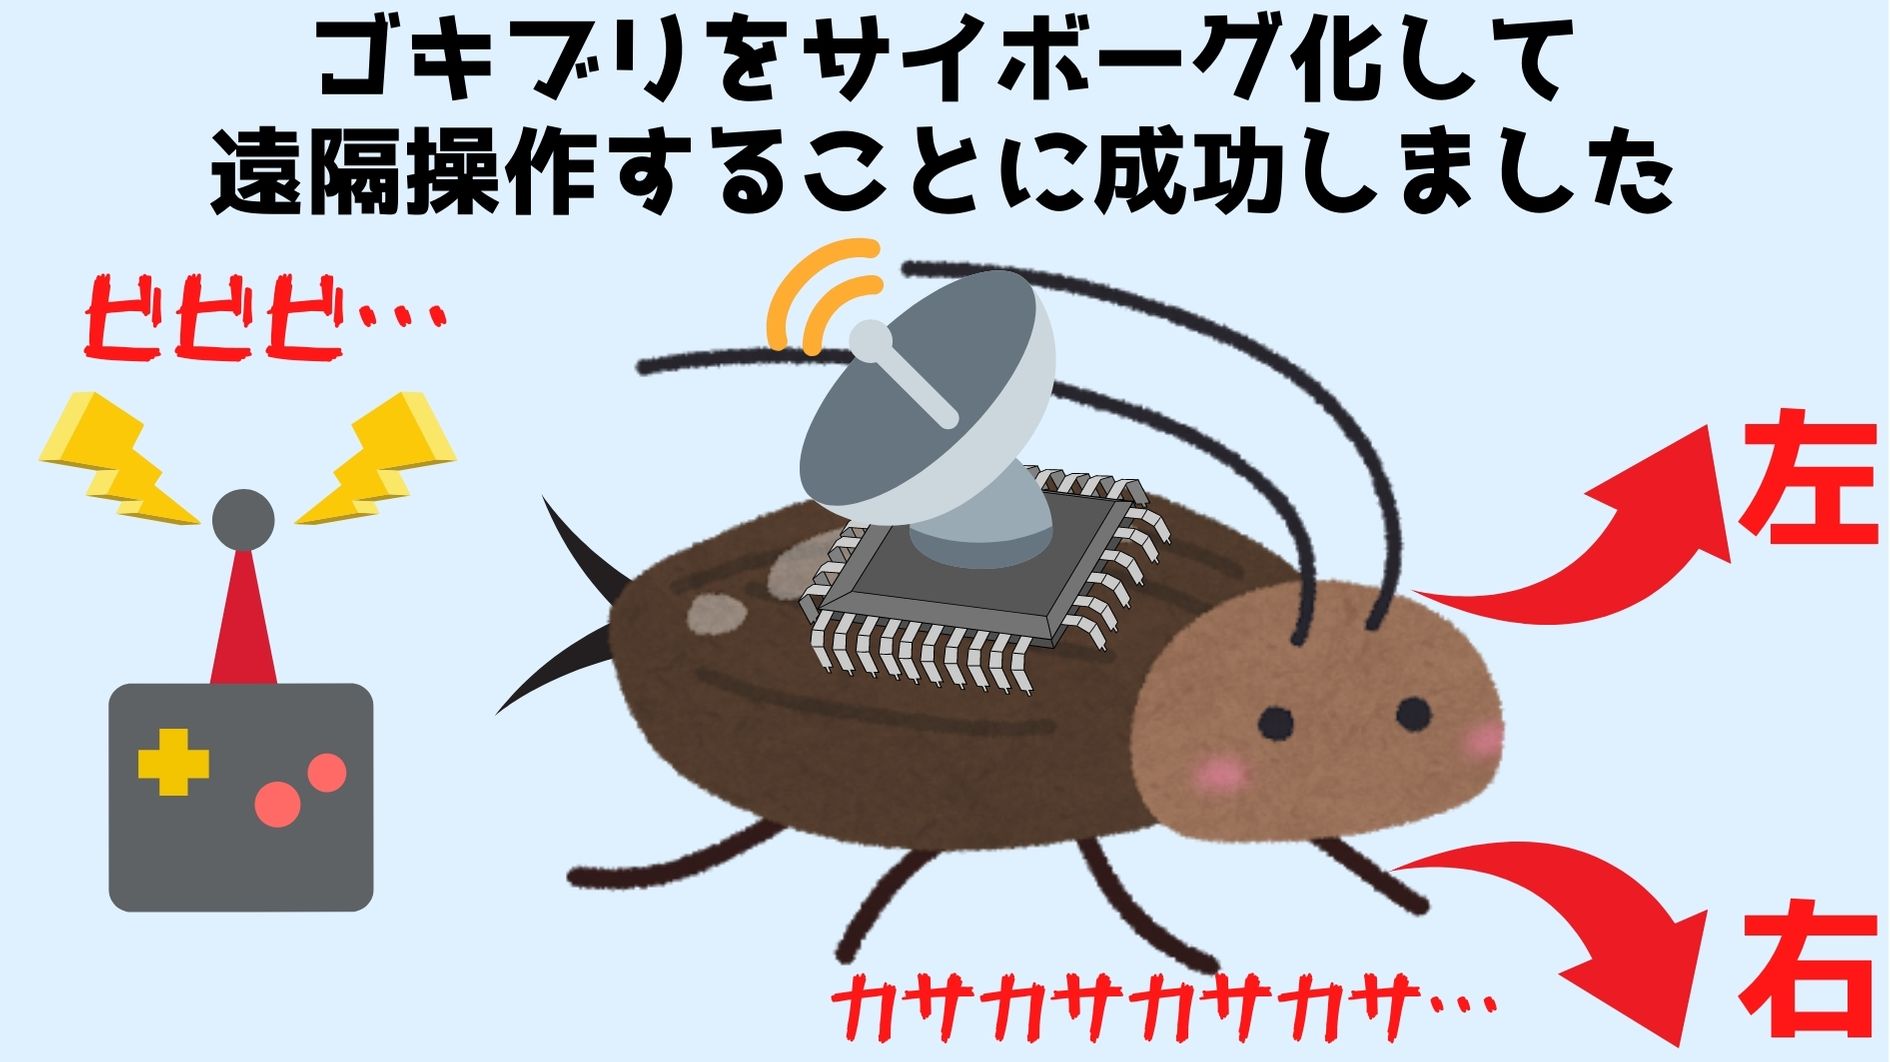 人命救助のために「生きたメカゴキブリ」をリモコンで制御することに成功の画像 2/6